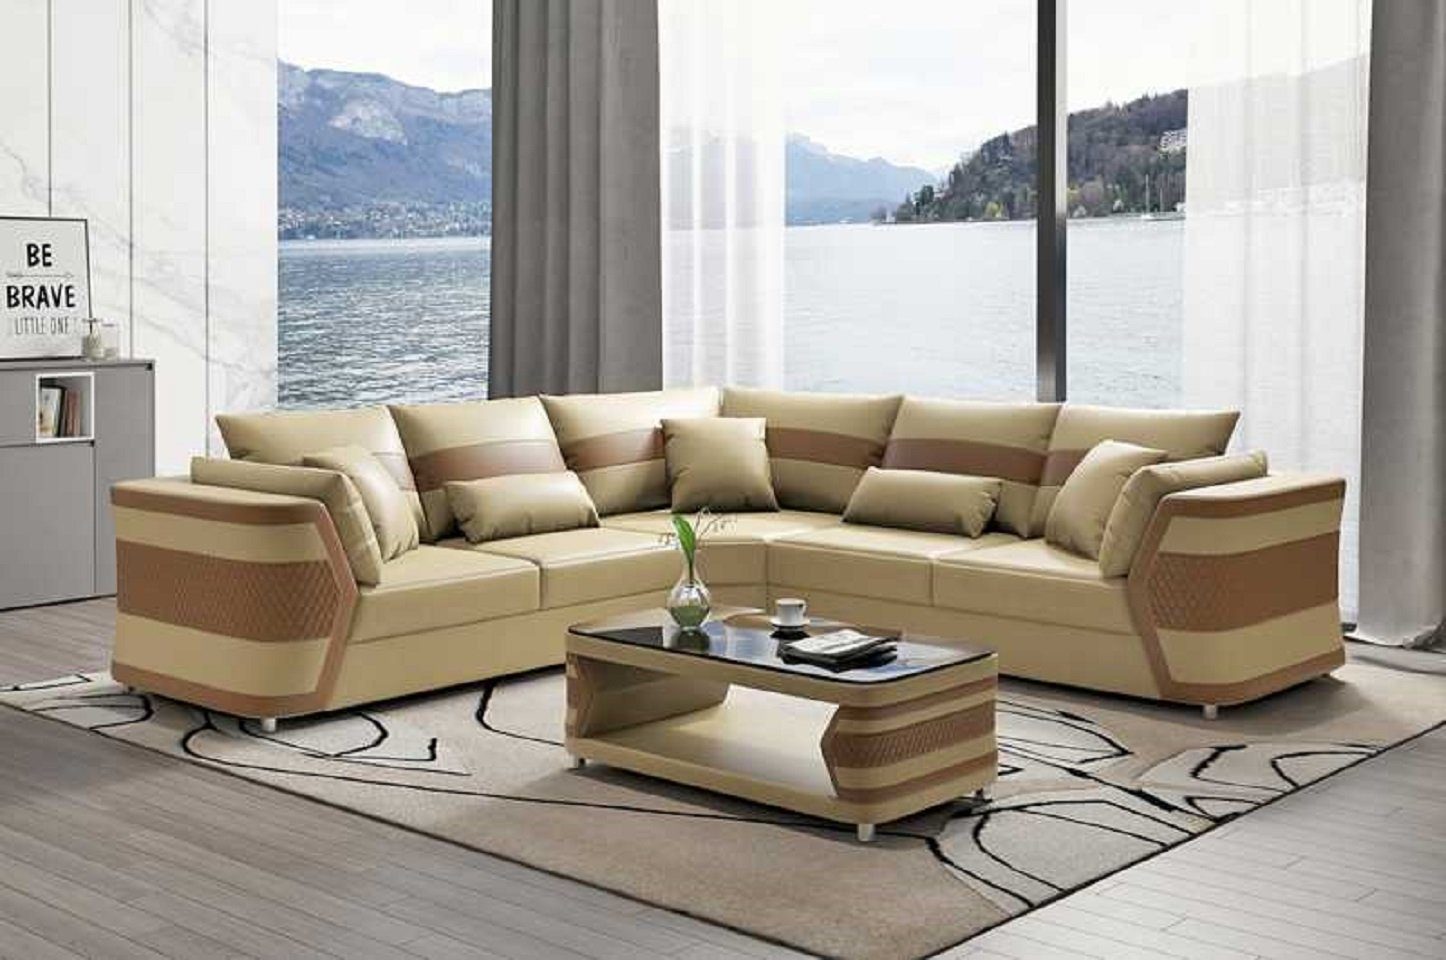 JVmoebel Ecksofa Luxus Ledersofa Ecksofa Couch Sofa Wohnzimmer Modern, 3 Teile, Made in Europe Beige | Ecksofas